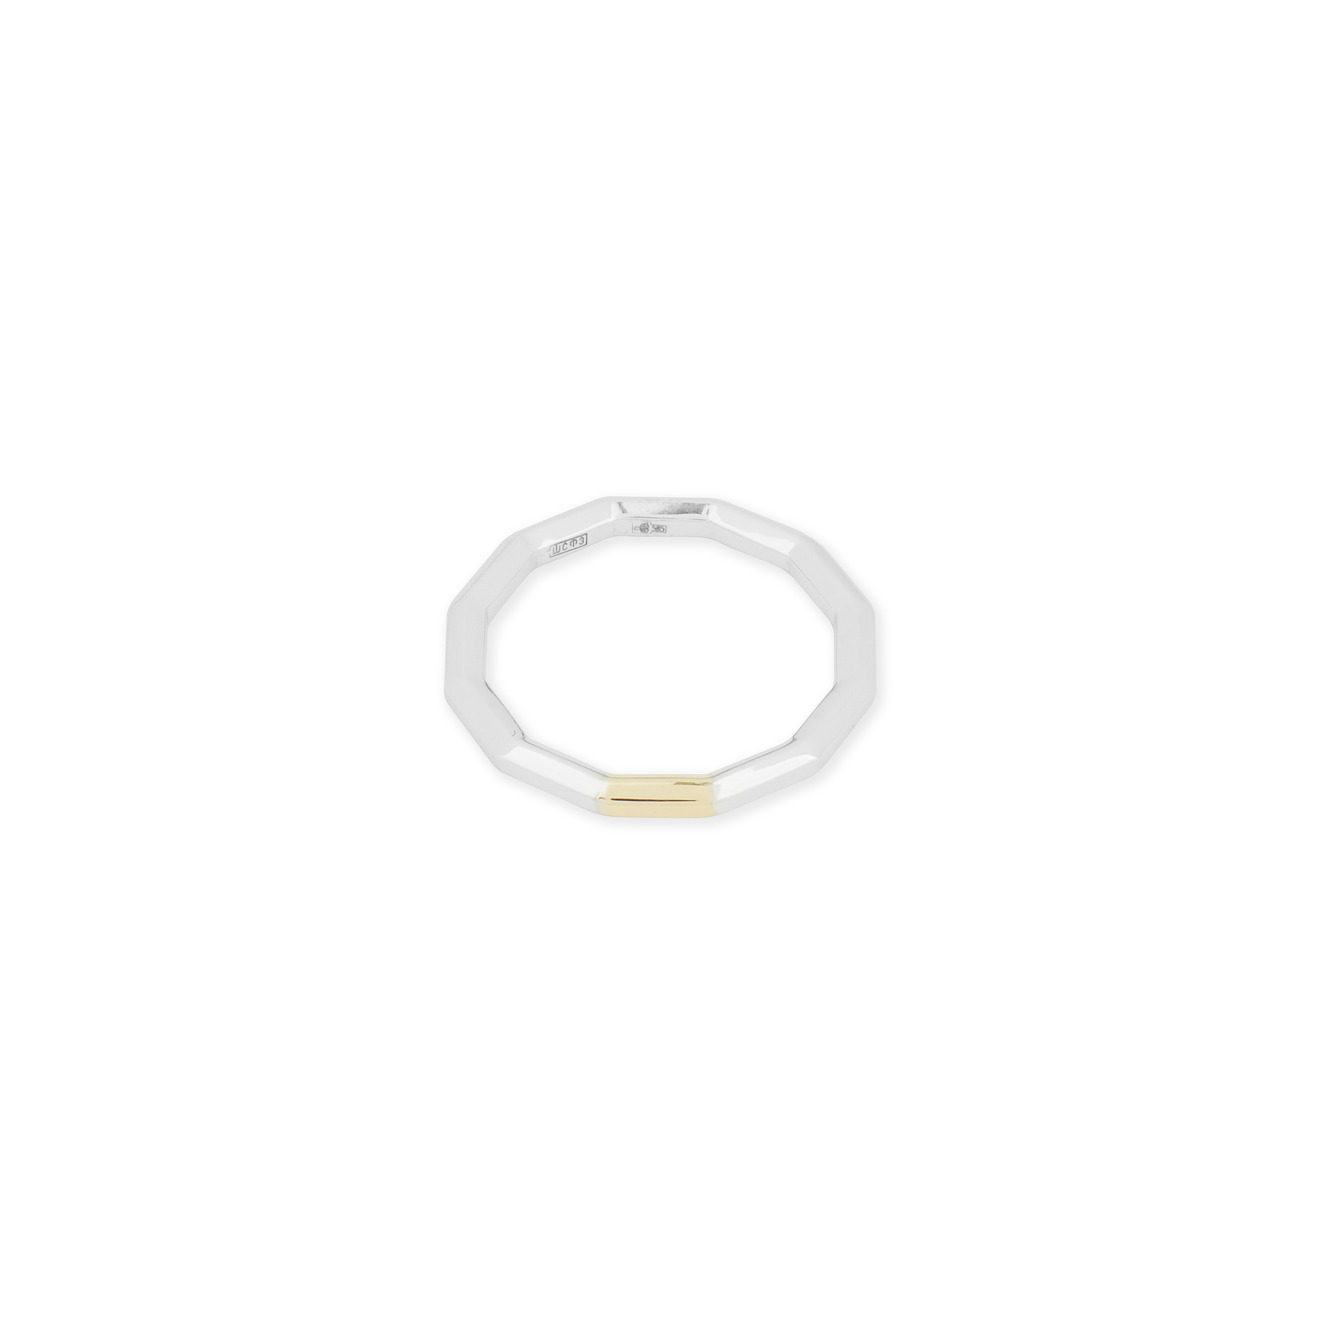 Avgvst Обручальное кольцо из золота Double Gold с сегментом из лимонного золота avgvst кольцо арка среднее из лимонного золота